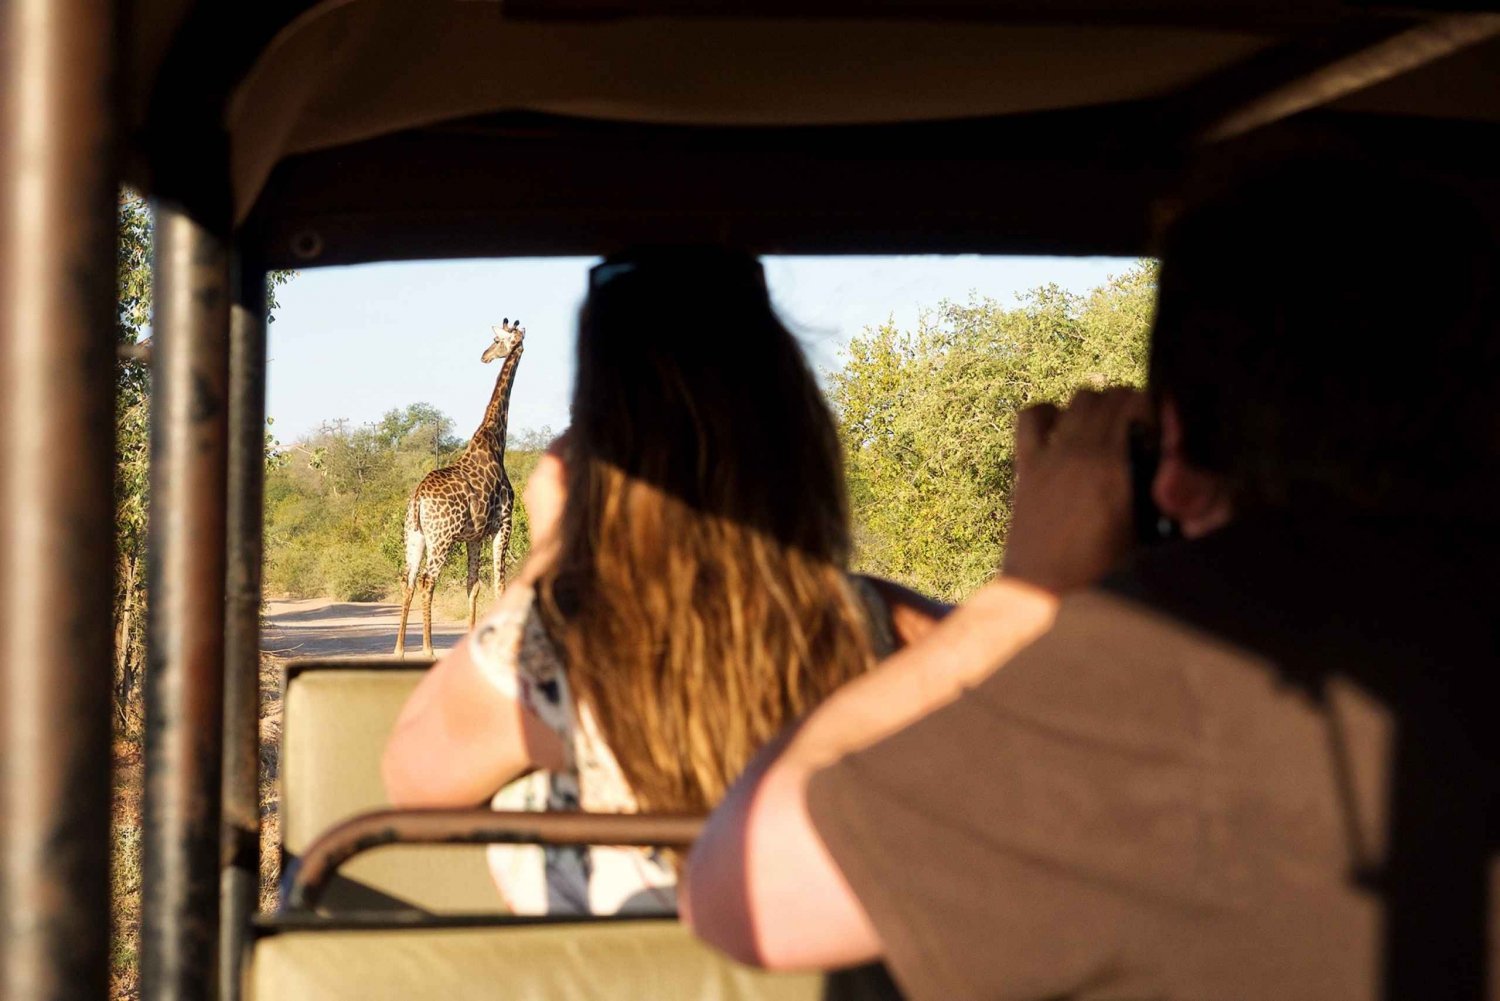 Fra Johannesburg: 3-dagers budsjett Kruger nasjonalpark-safari